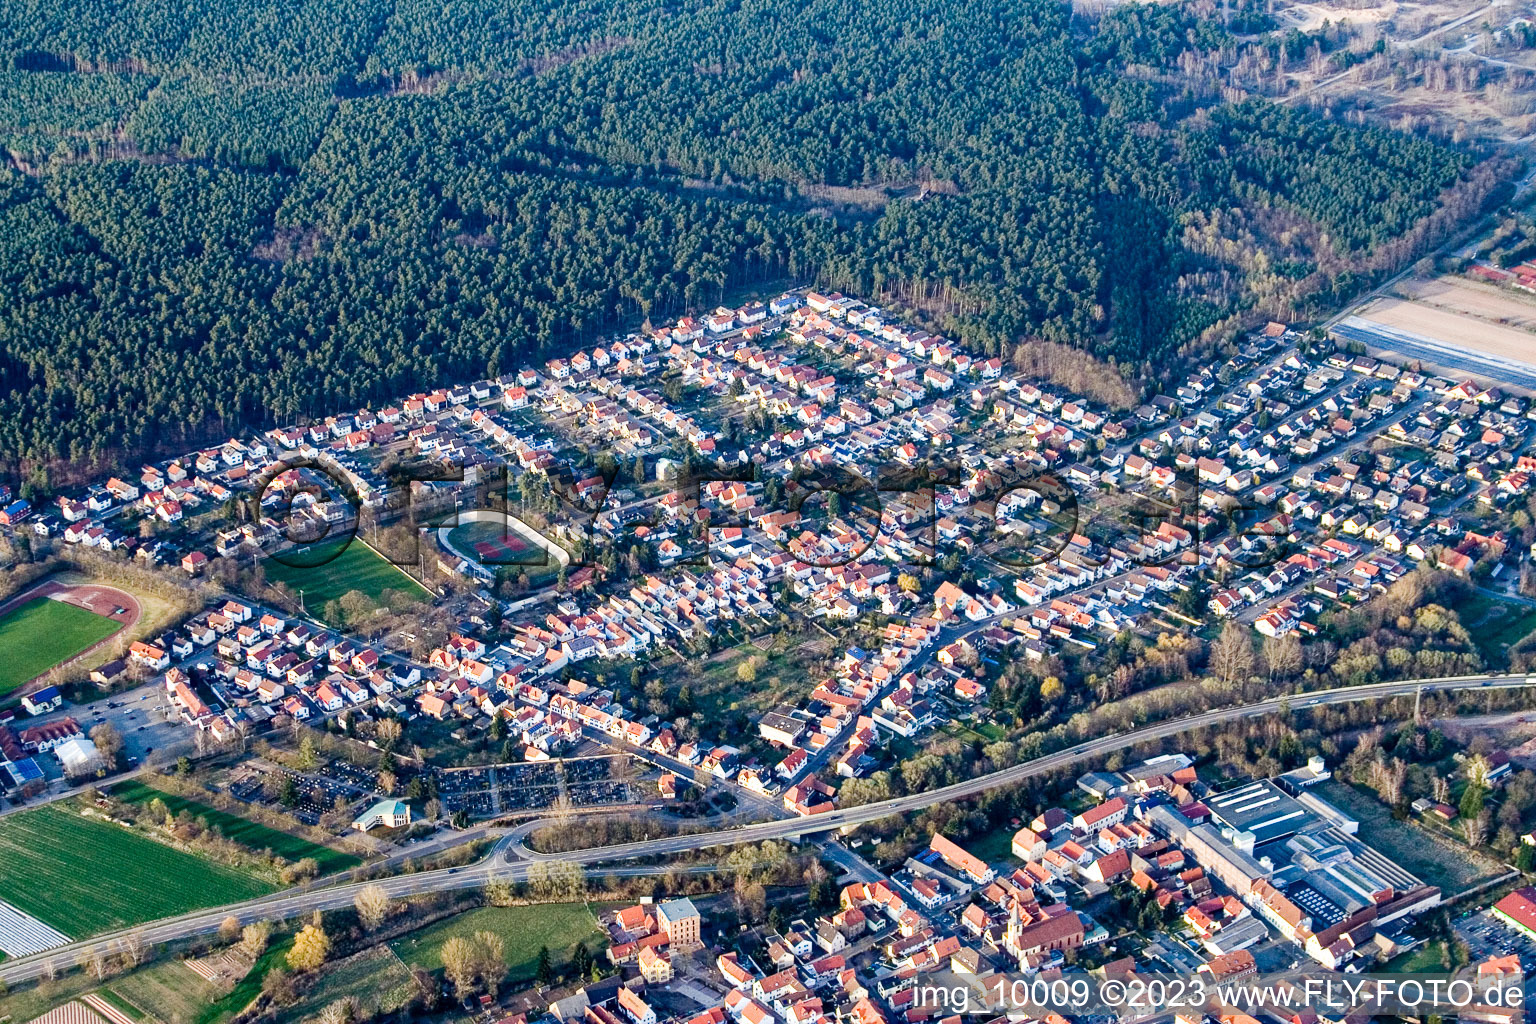 Dudenhofen im Bundesland Rheinland-Pfalz, Deutschland aus der Luft betrachtet